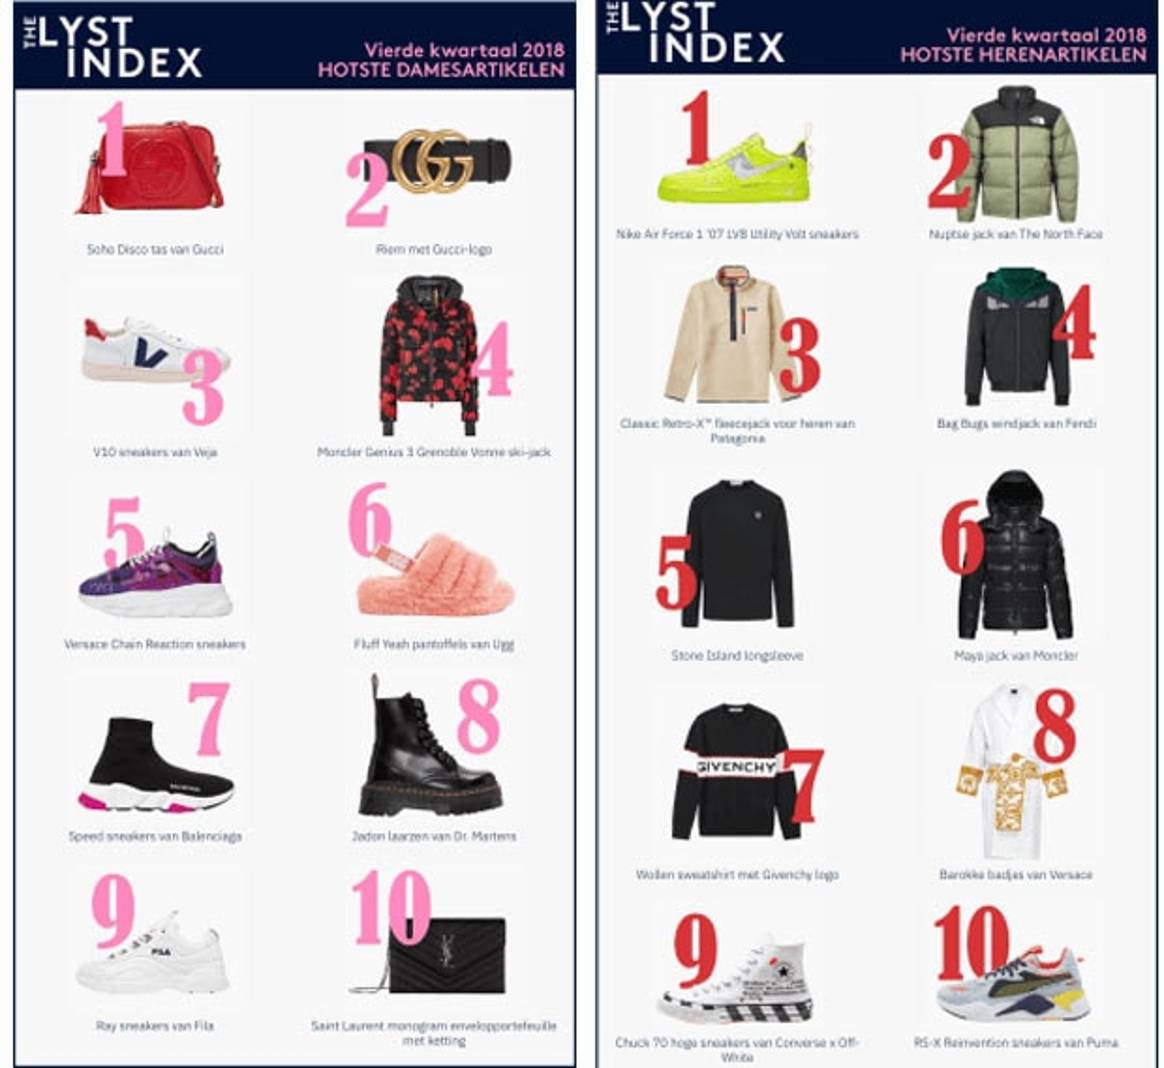 The Lyst Index: de meest populaire fashion items